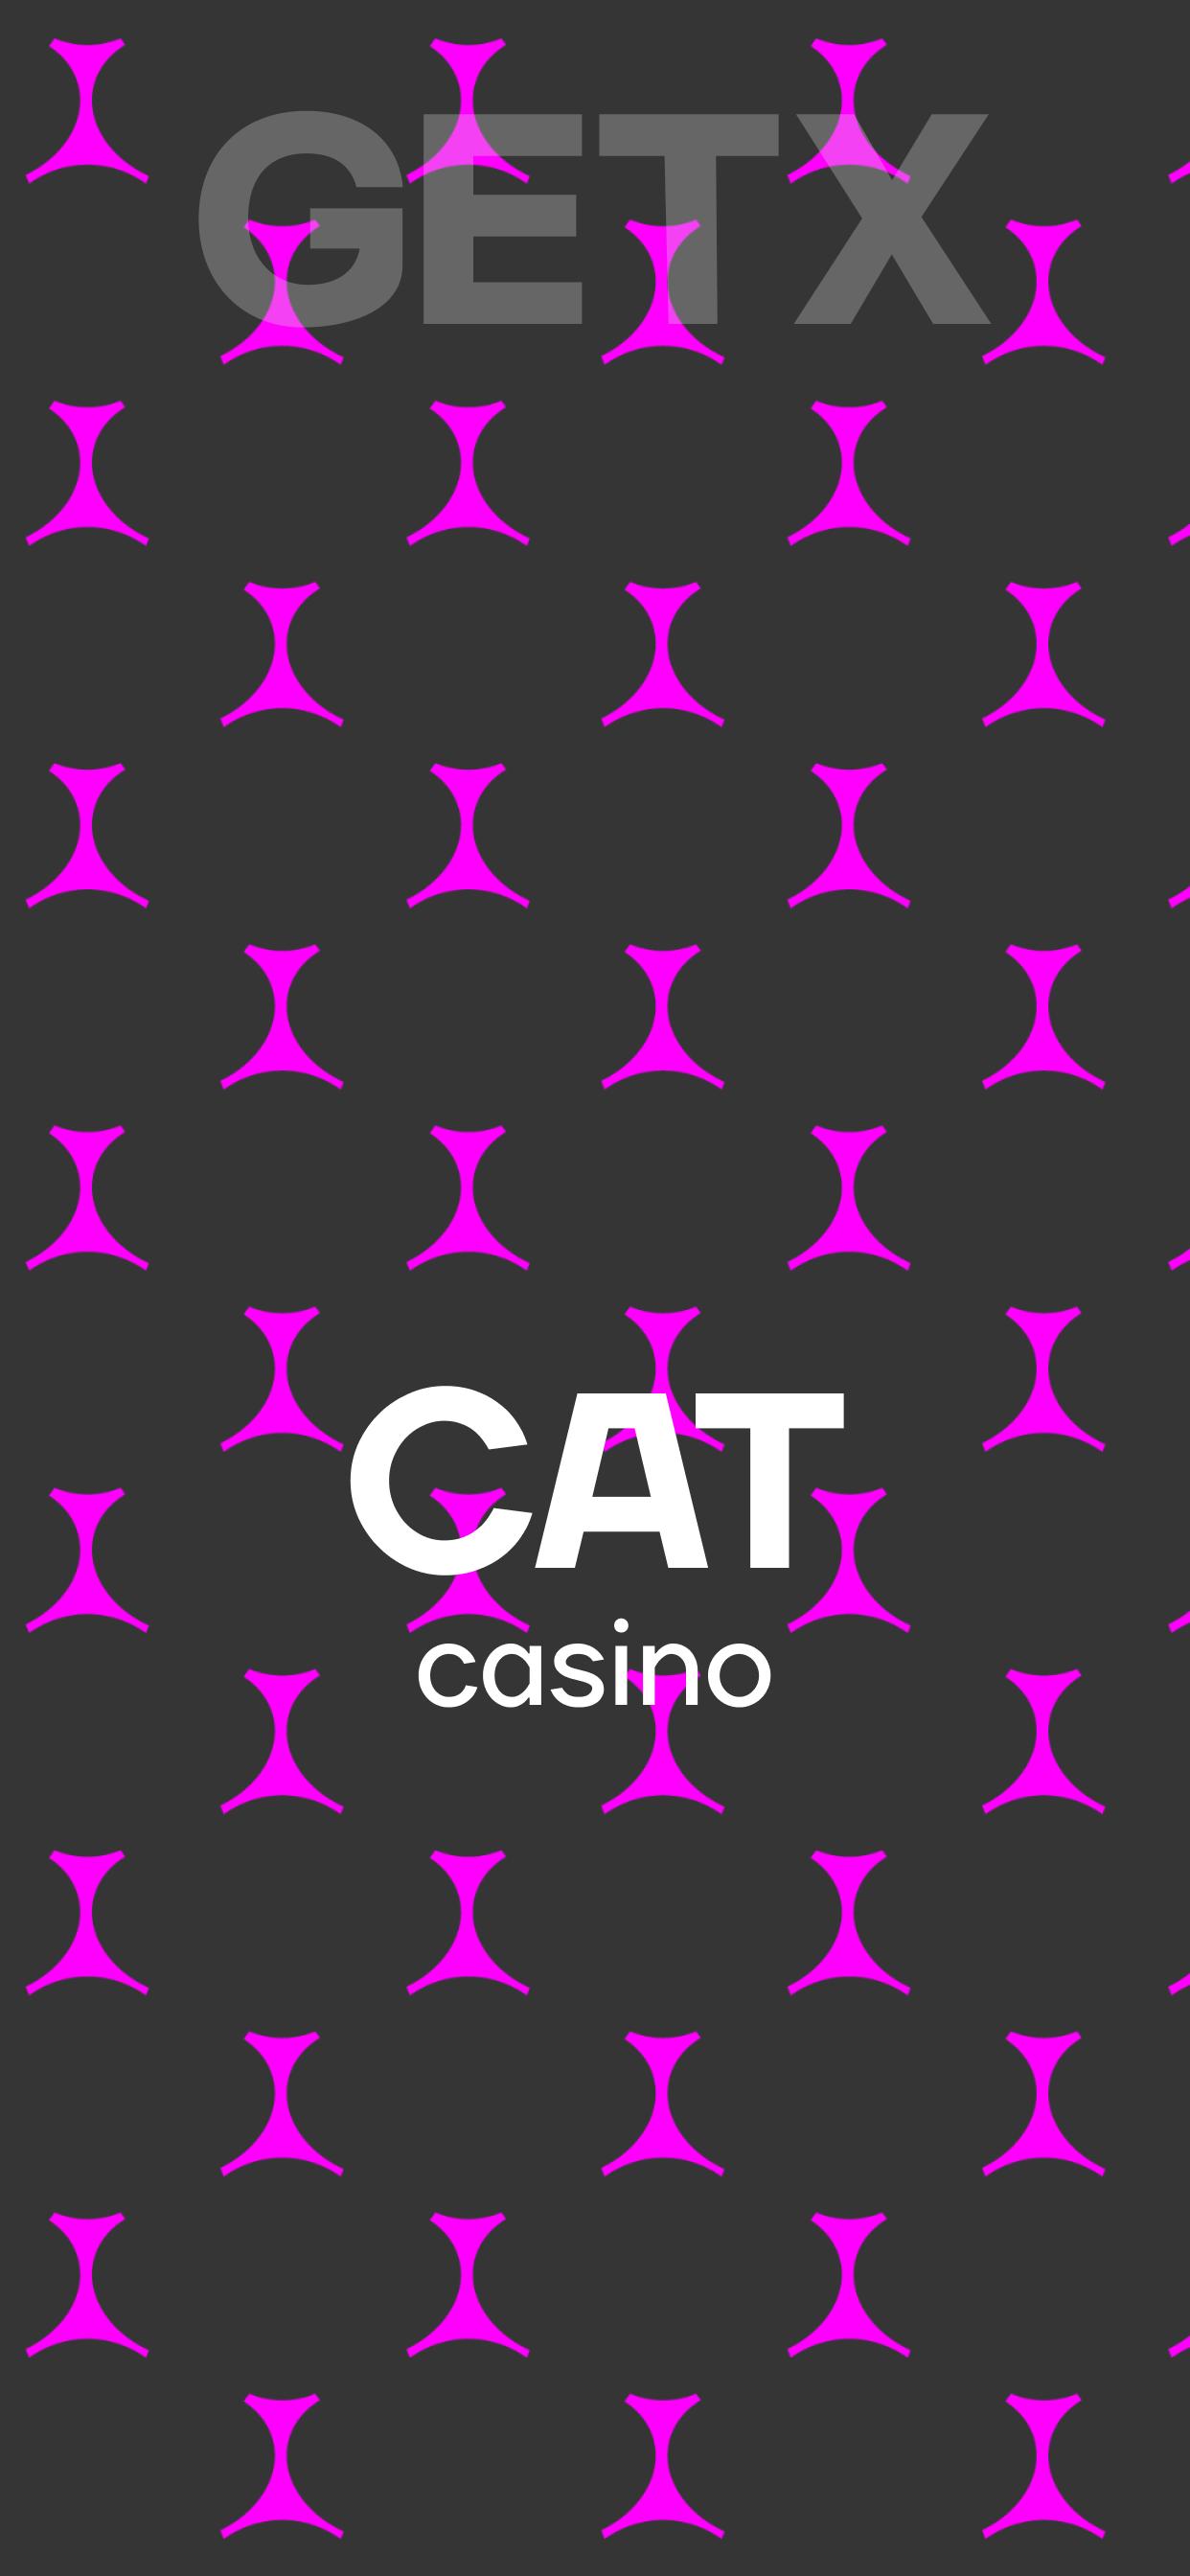 Cat casino на андроид cat casino game